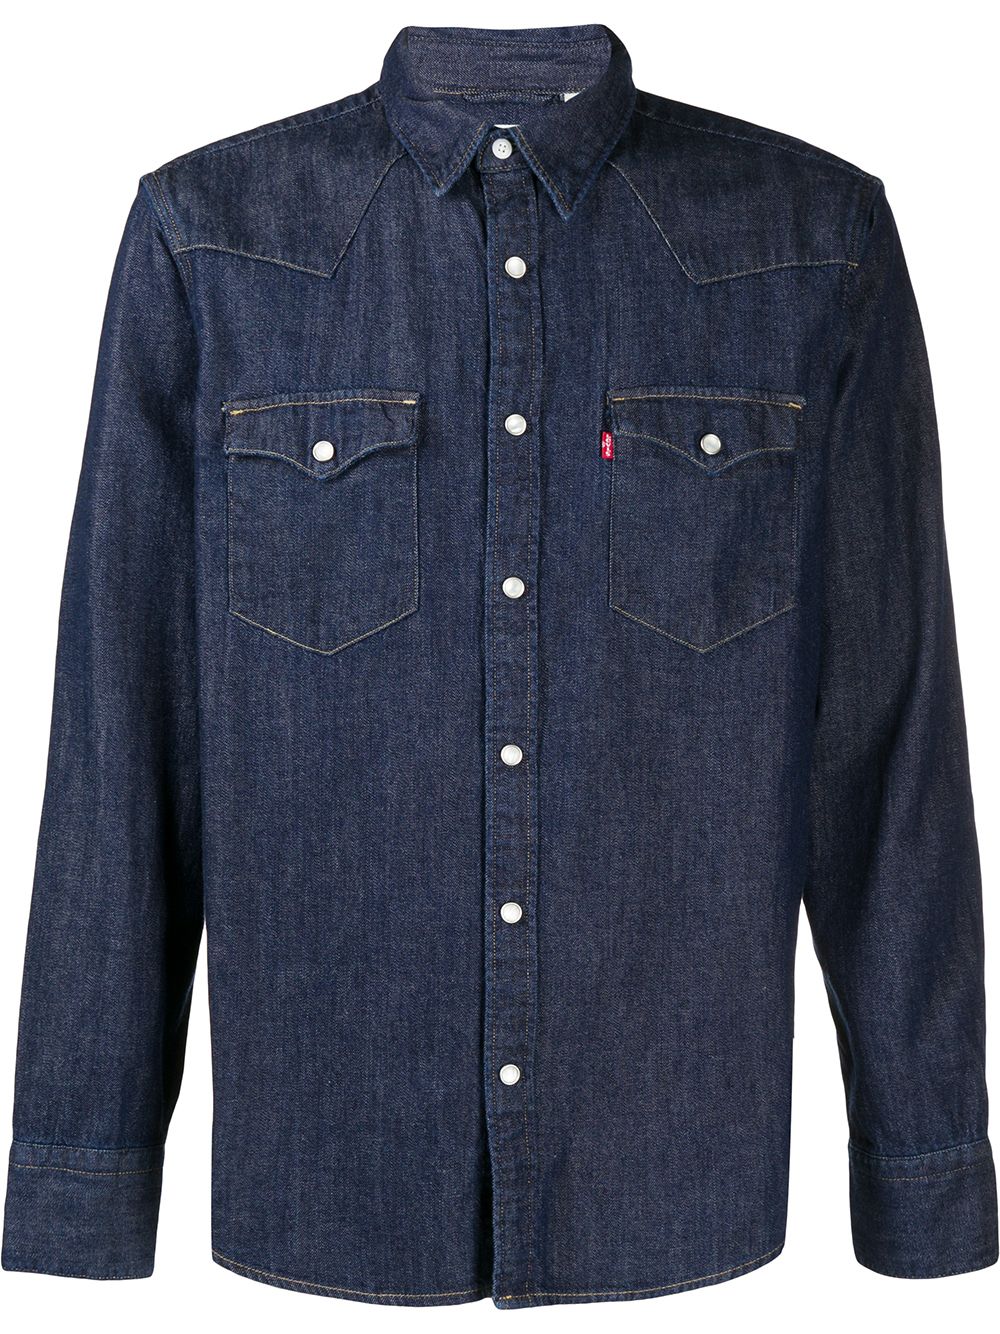 Dark blue cotton Barstow Western denim shirt